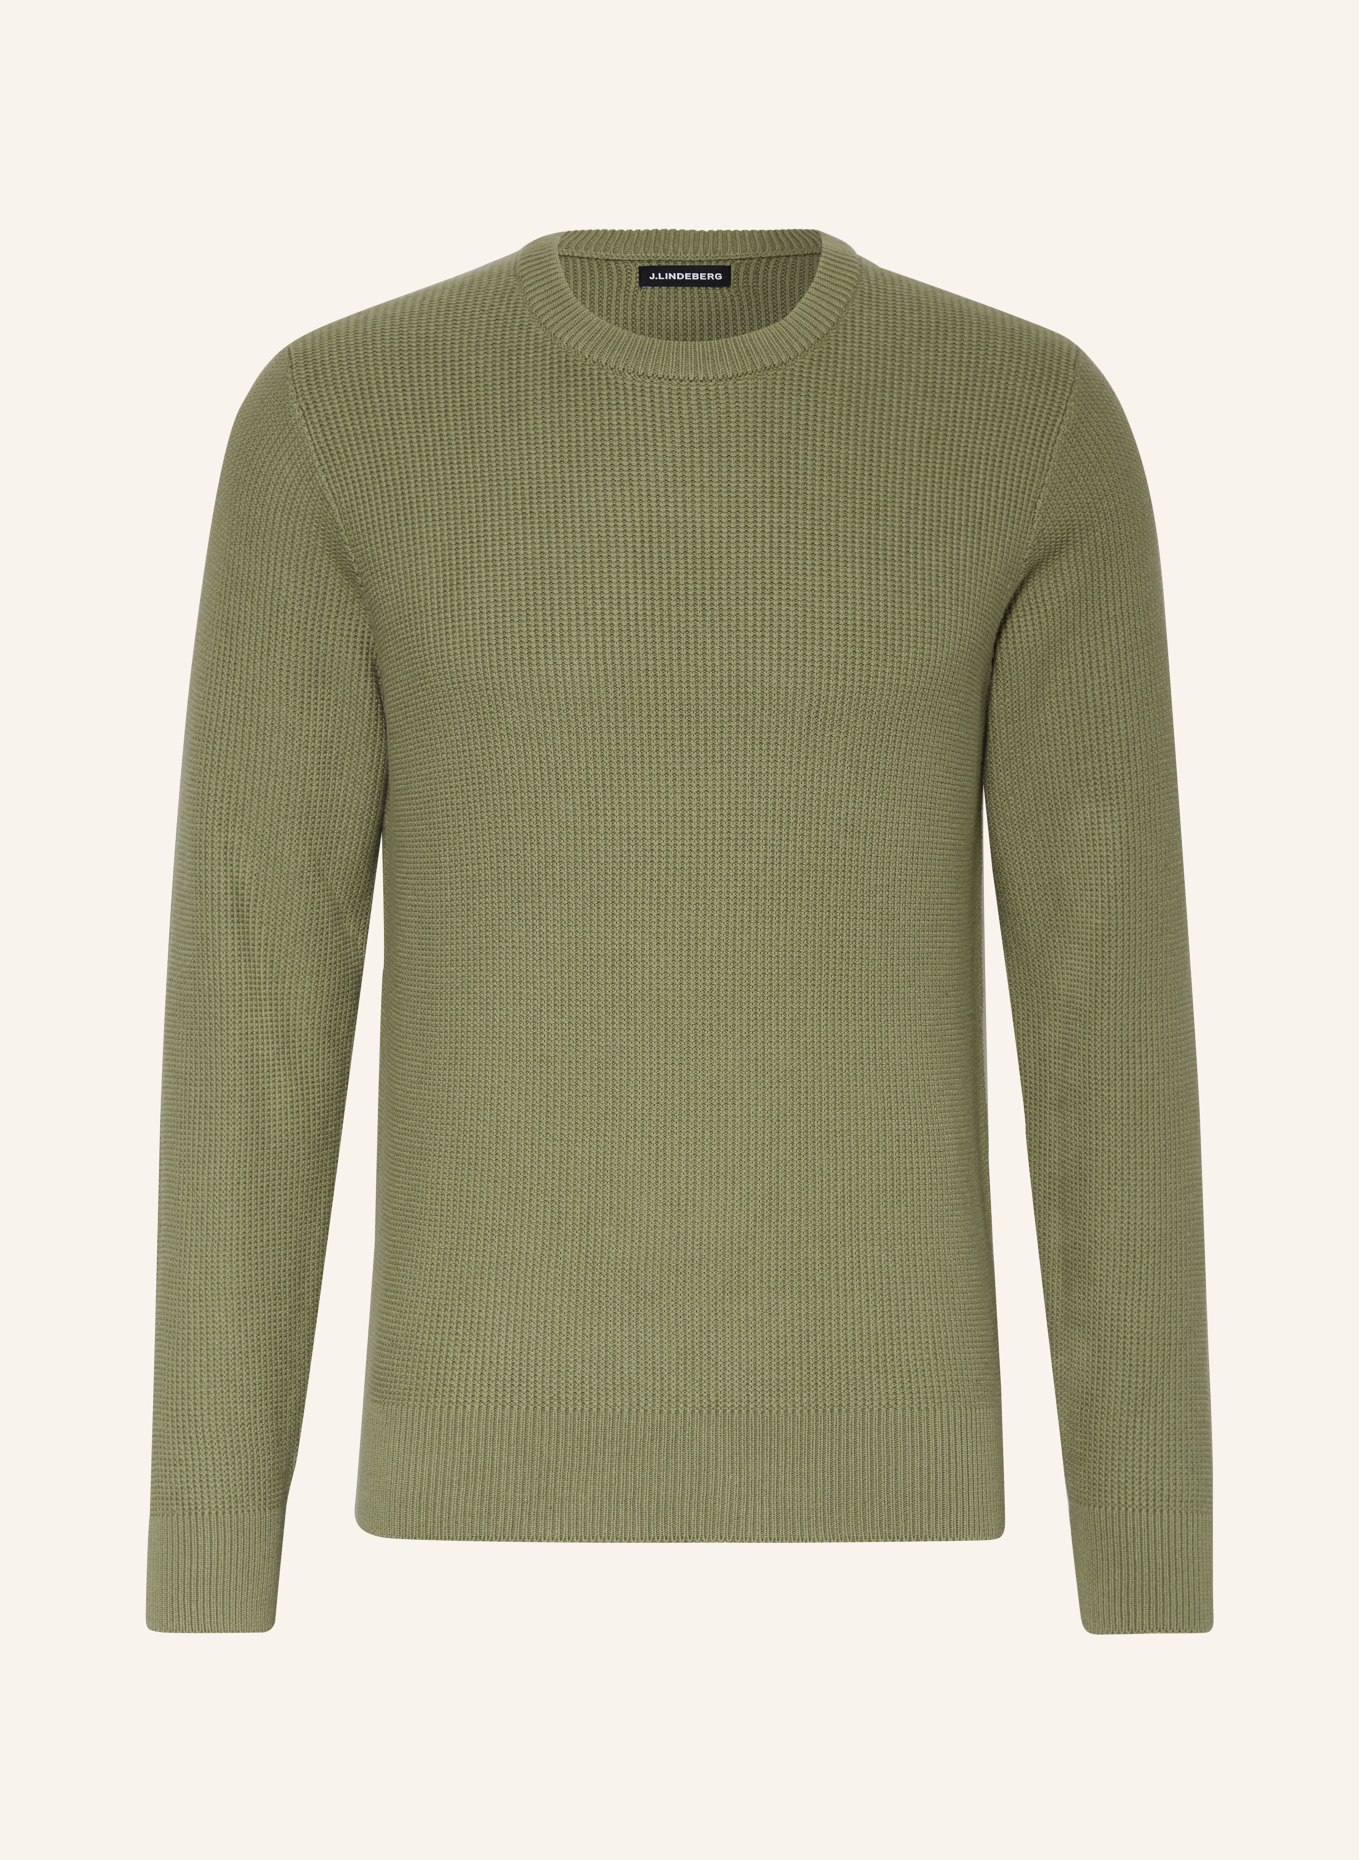 J.LINDEBERG Sweater, Color: OLIVE (Image 1)